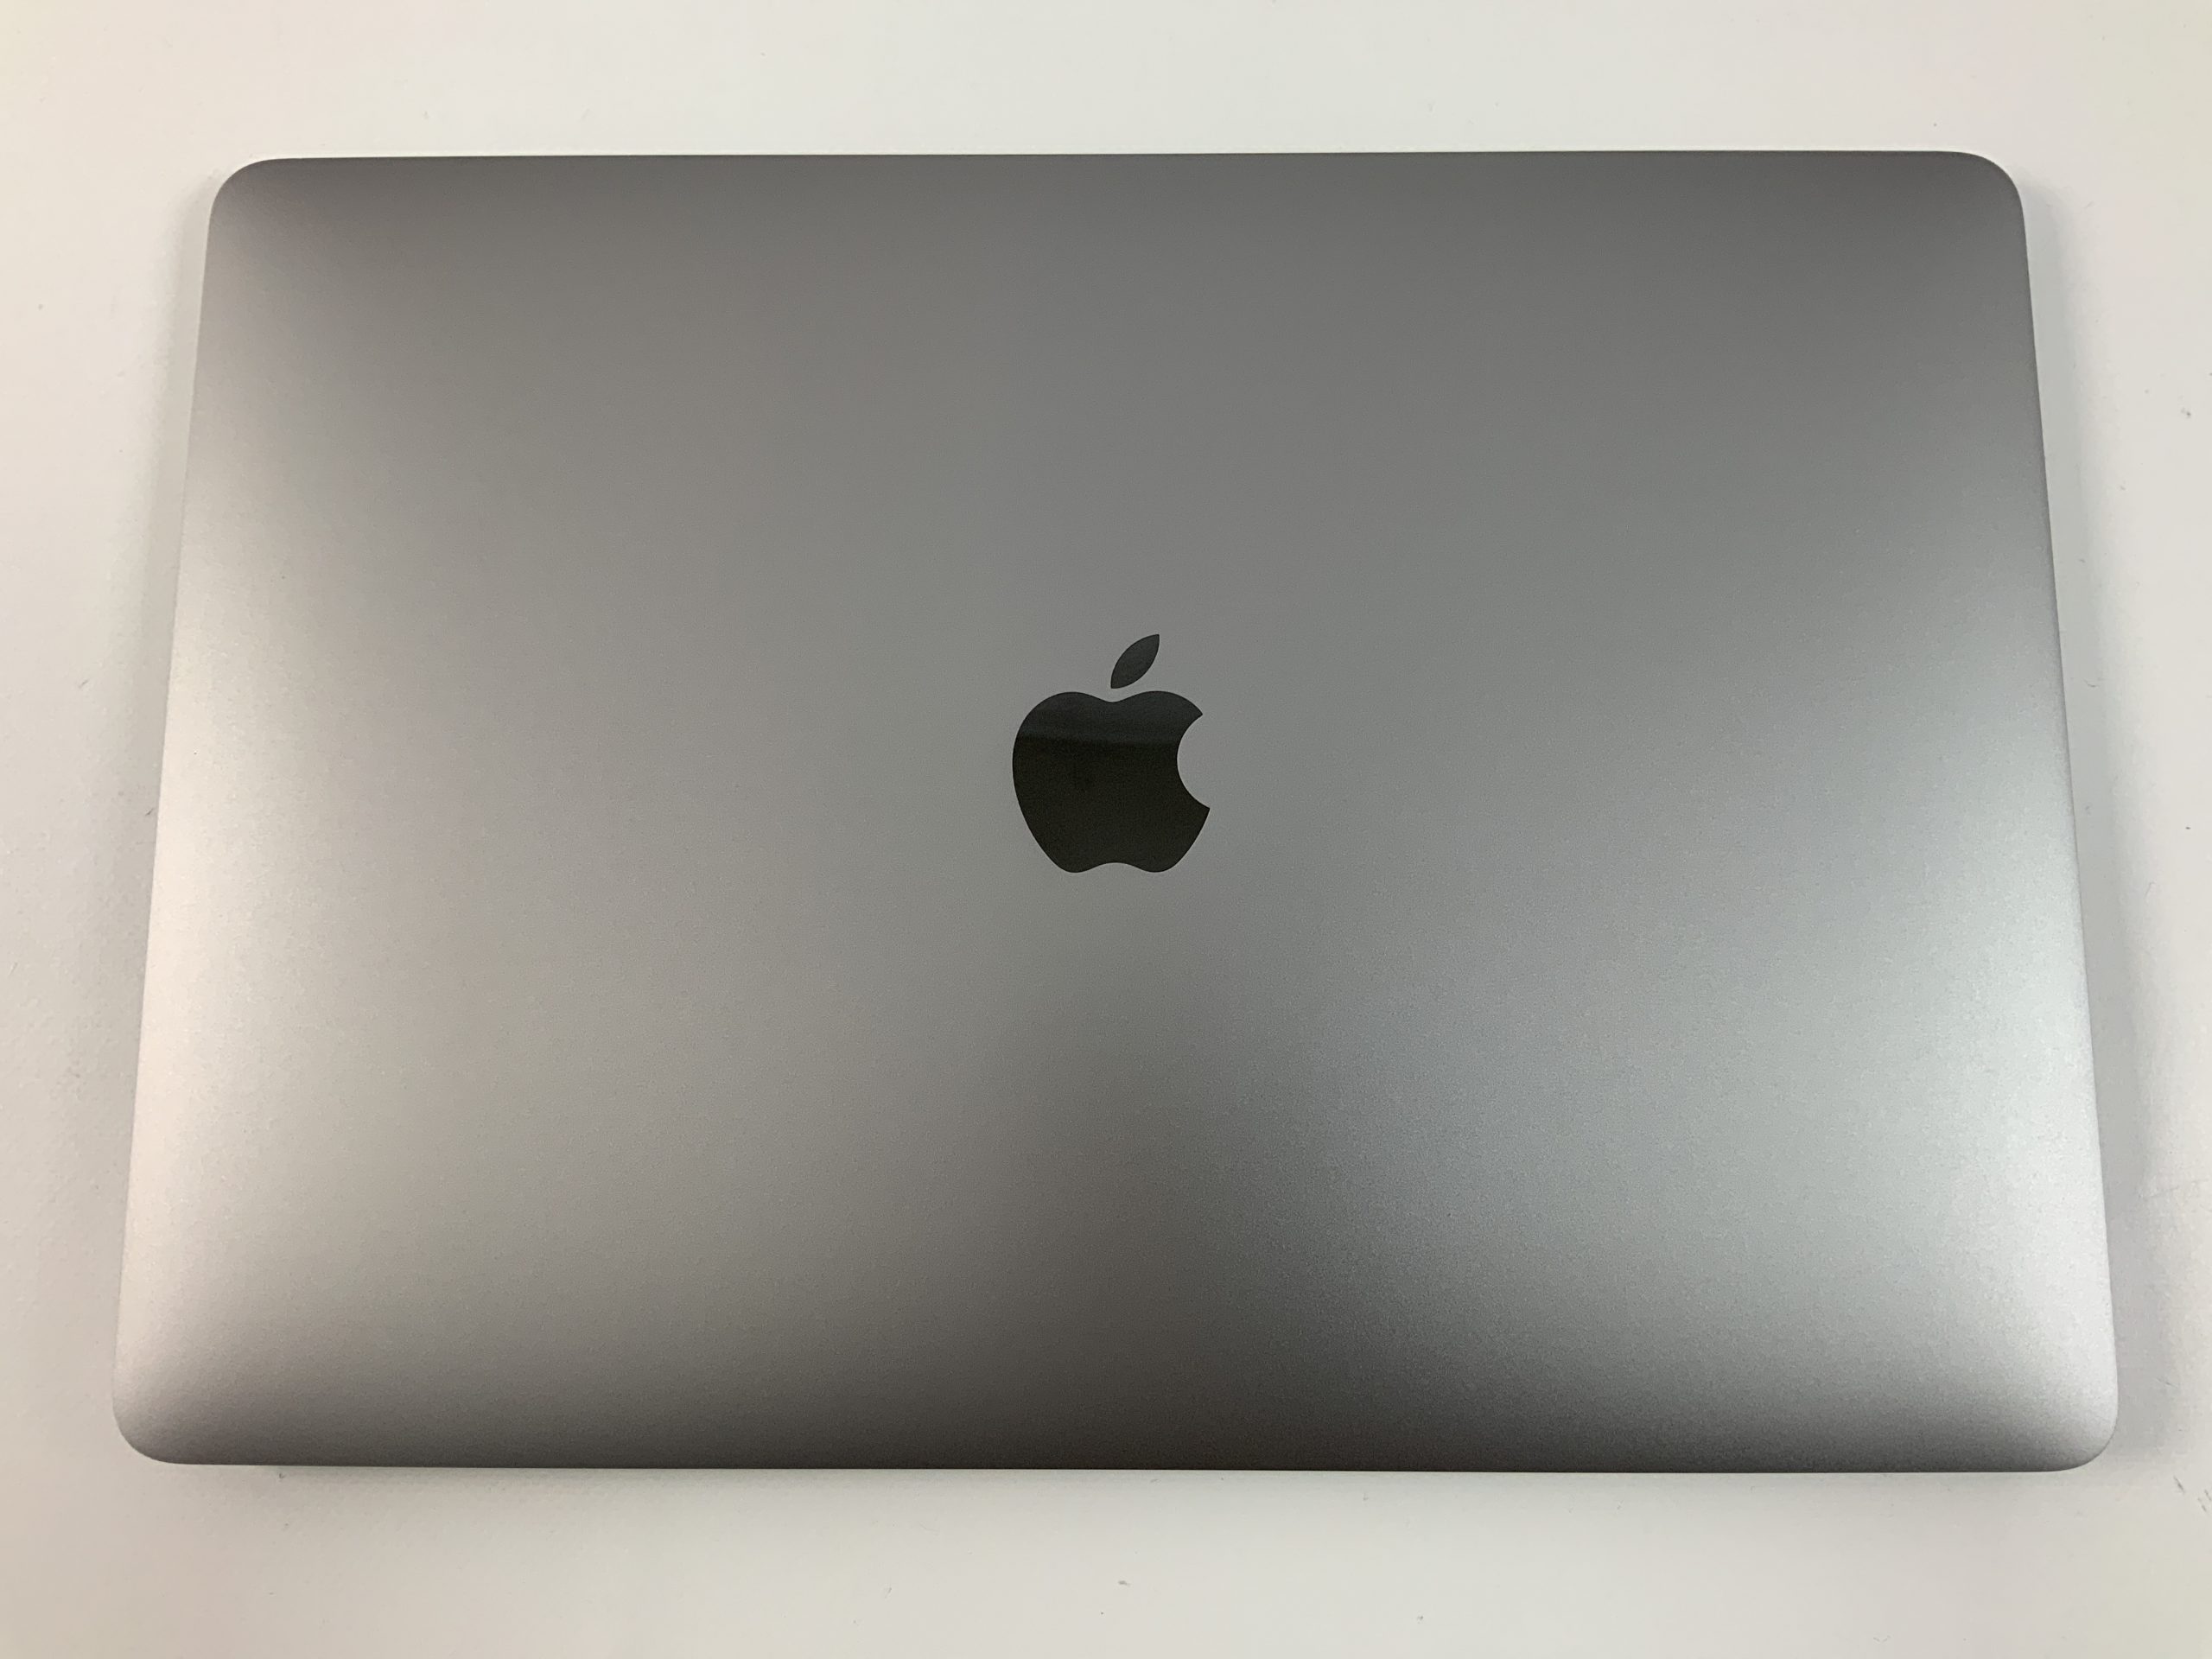 MacBook Air 13" Mid 2019 (Intel Core i5 1.6 GHz 8 GB RAM 512 GB SSD), Space Gray, Intel Core i5 1.6 GHz, 8 GB RAM, 512 GB SSD, imagen 3